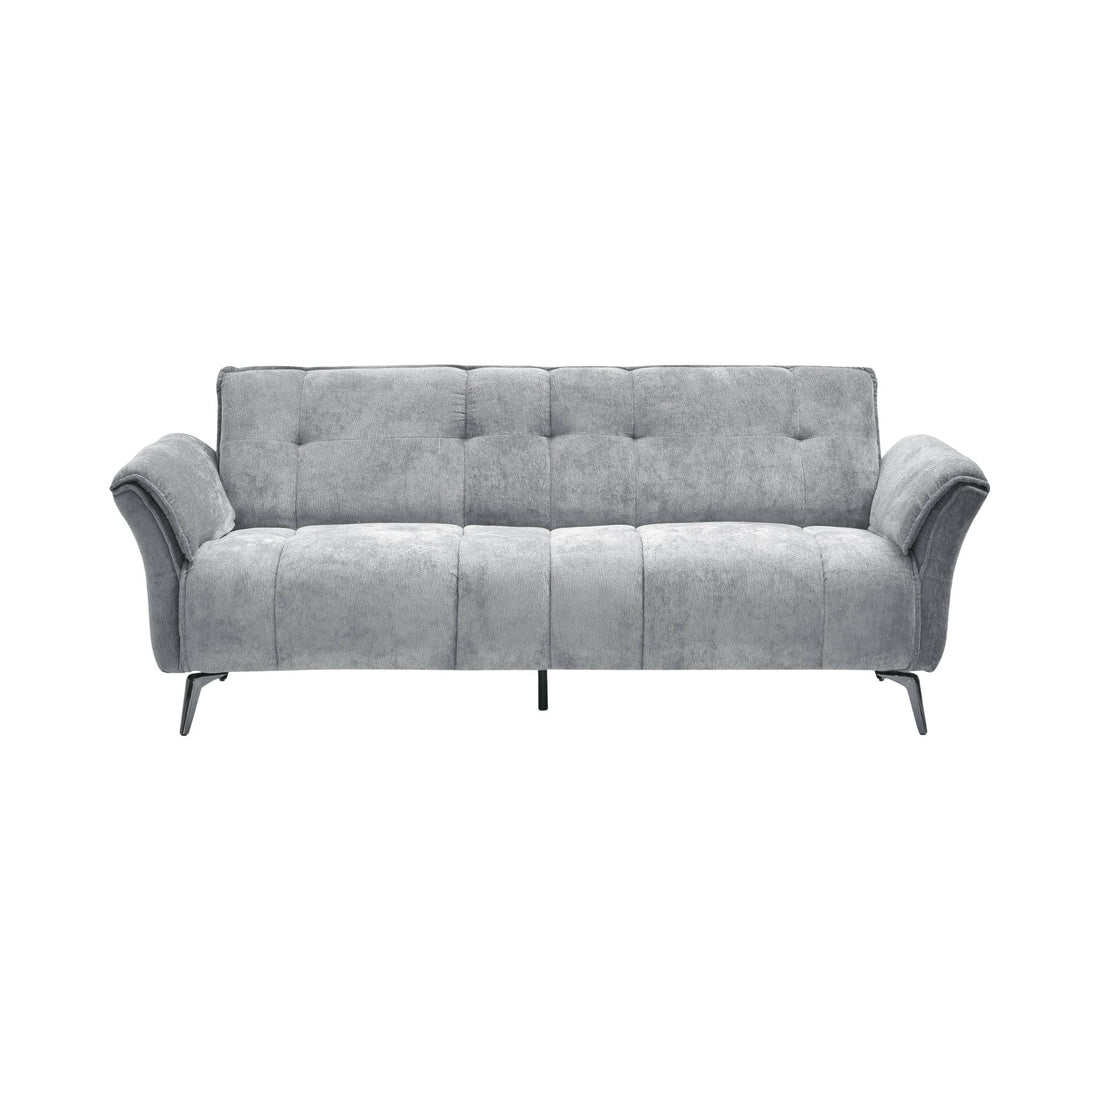 Amalfi 3 Seater Sofa (Grey Fabric)